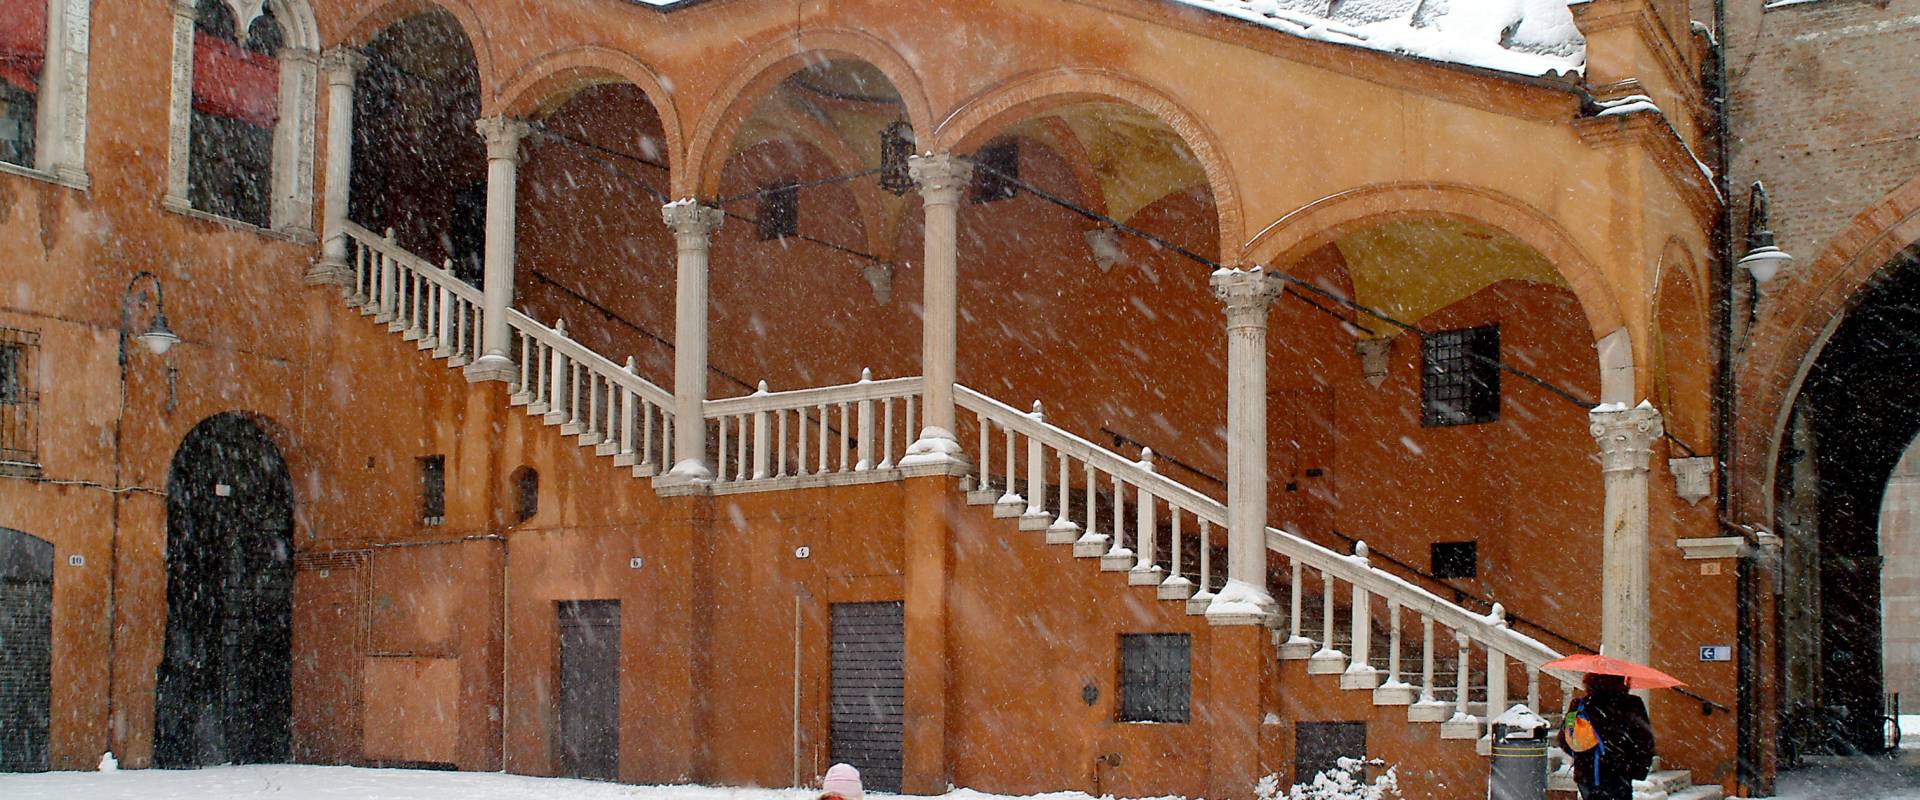 piazza Municipale con la neve foto di baraldi